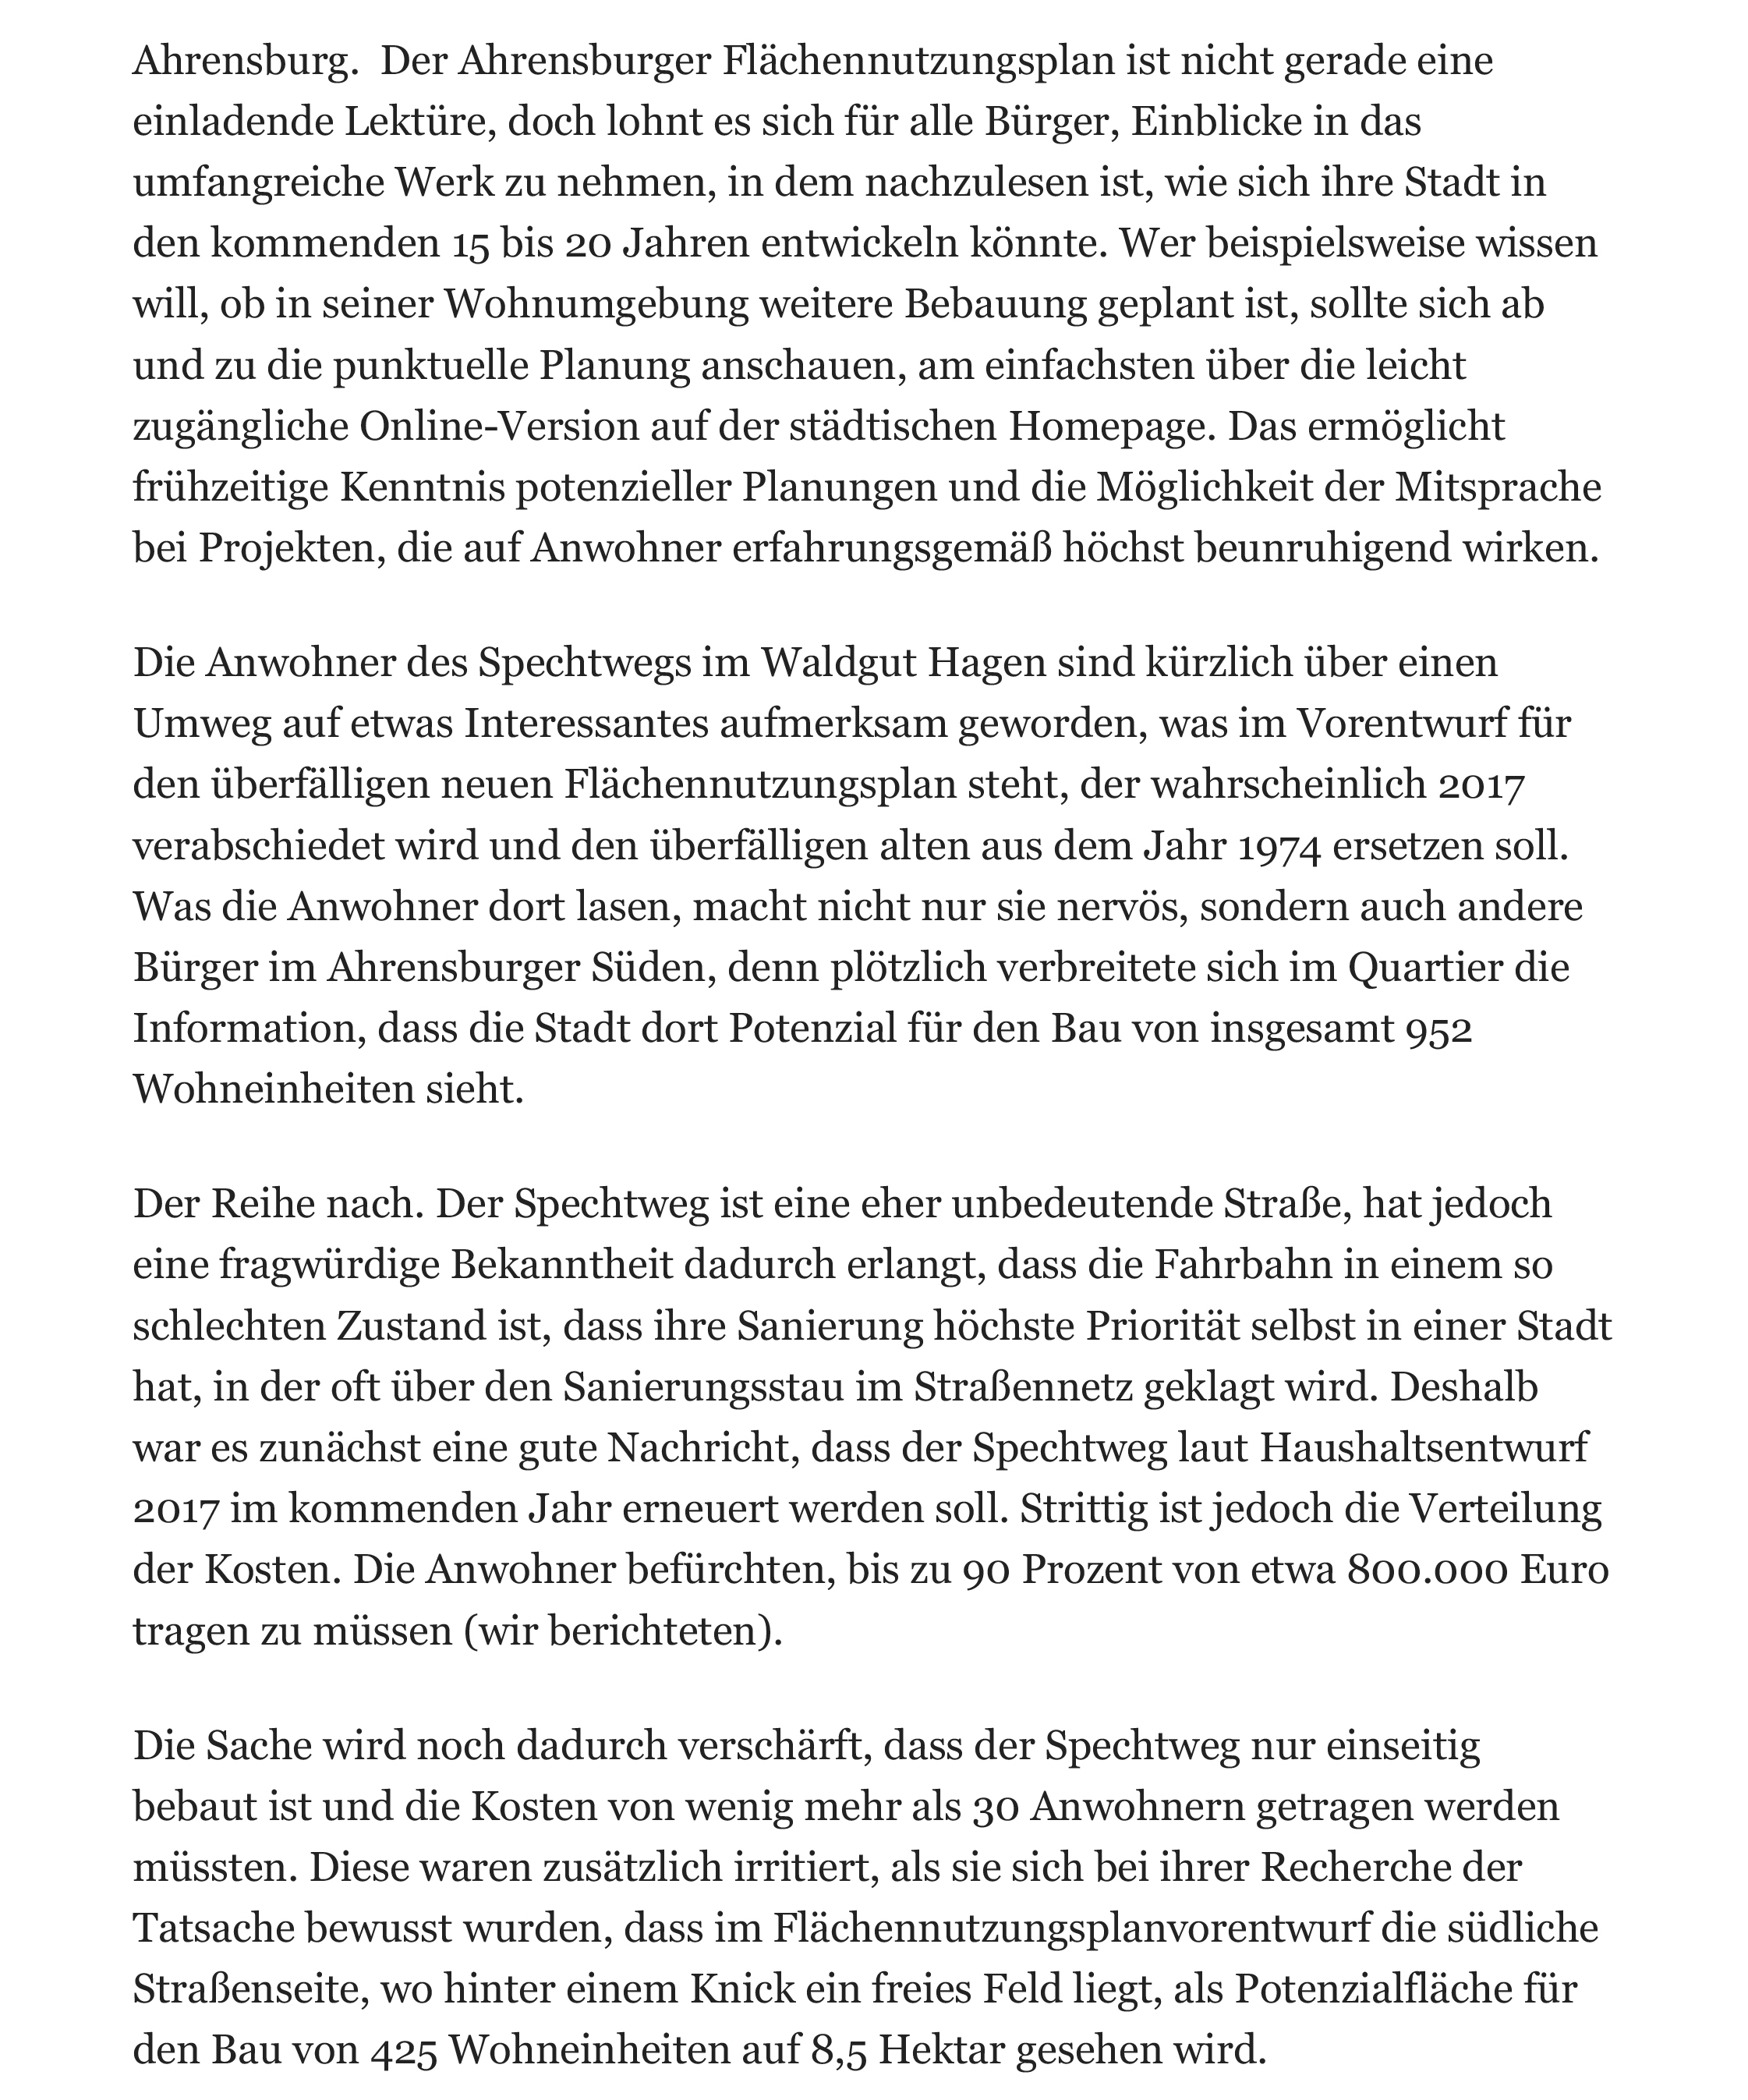 2016-11-01_Ahrensburg FNP_Hamburger Abendblatt-2